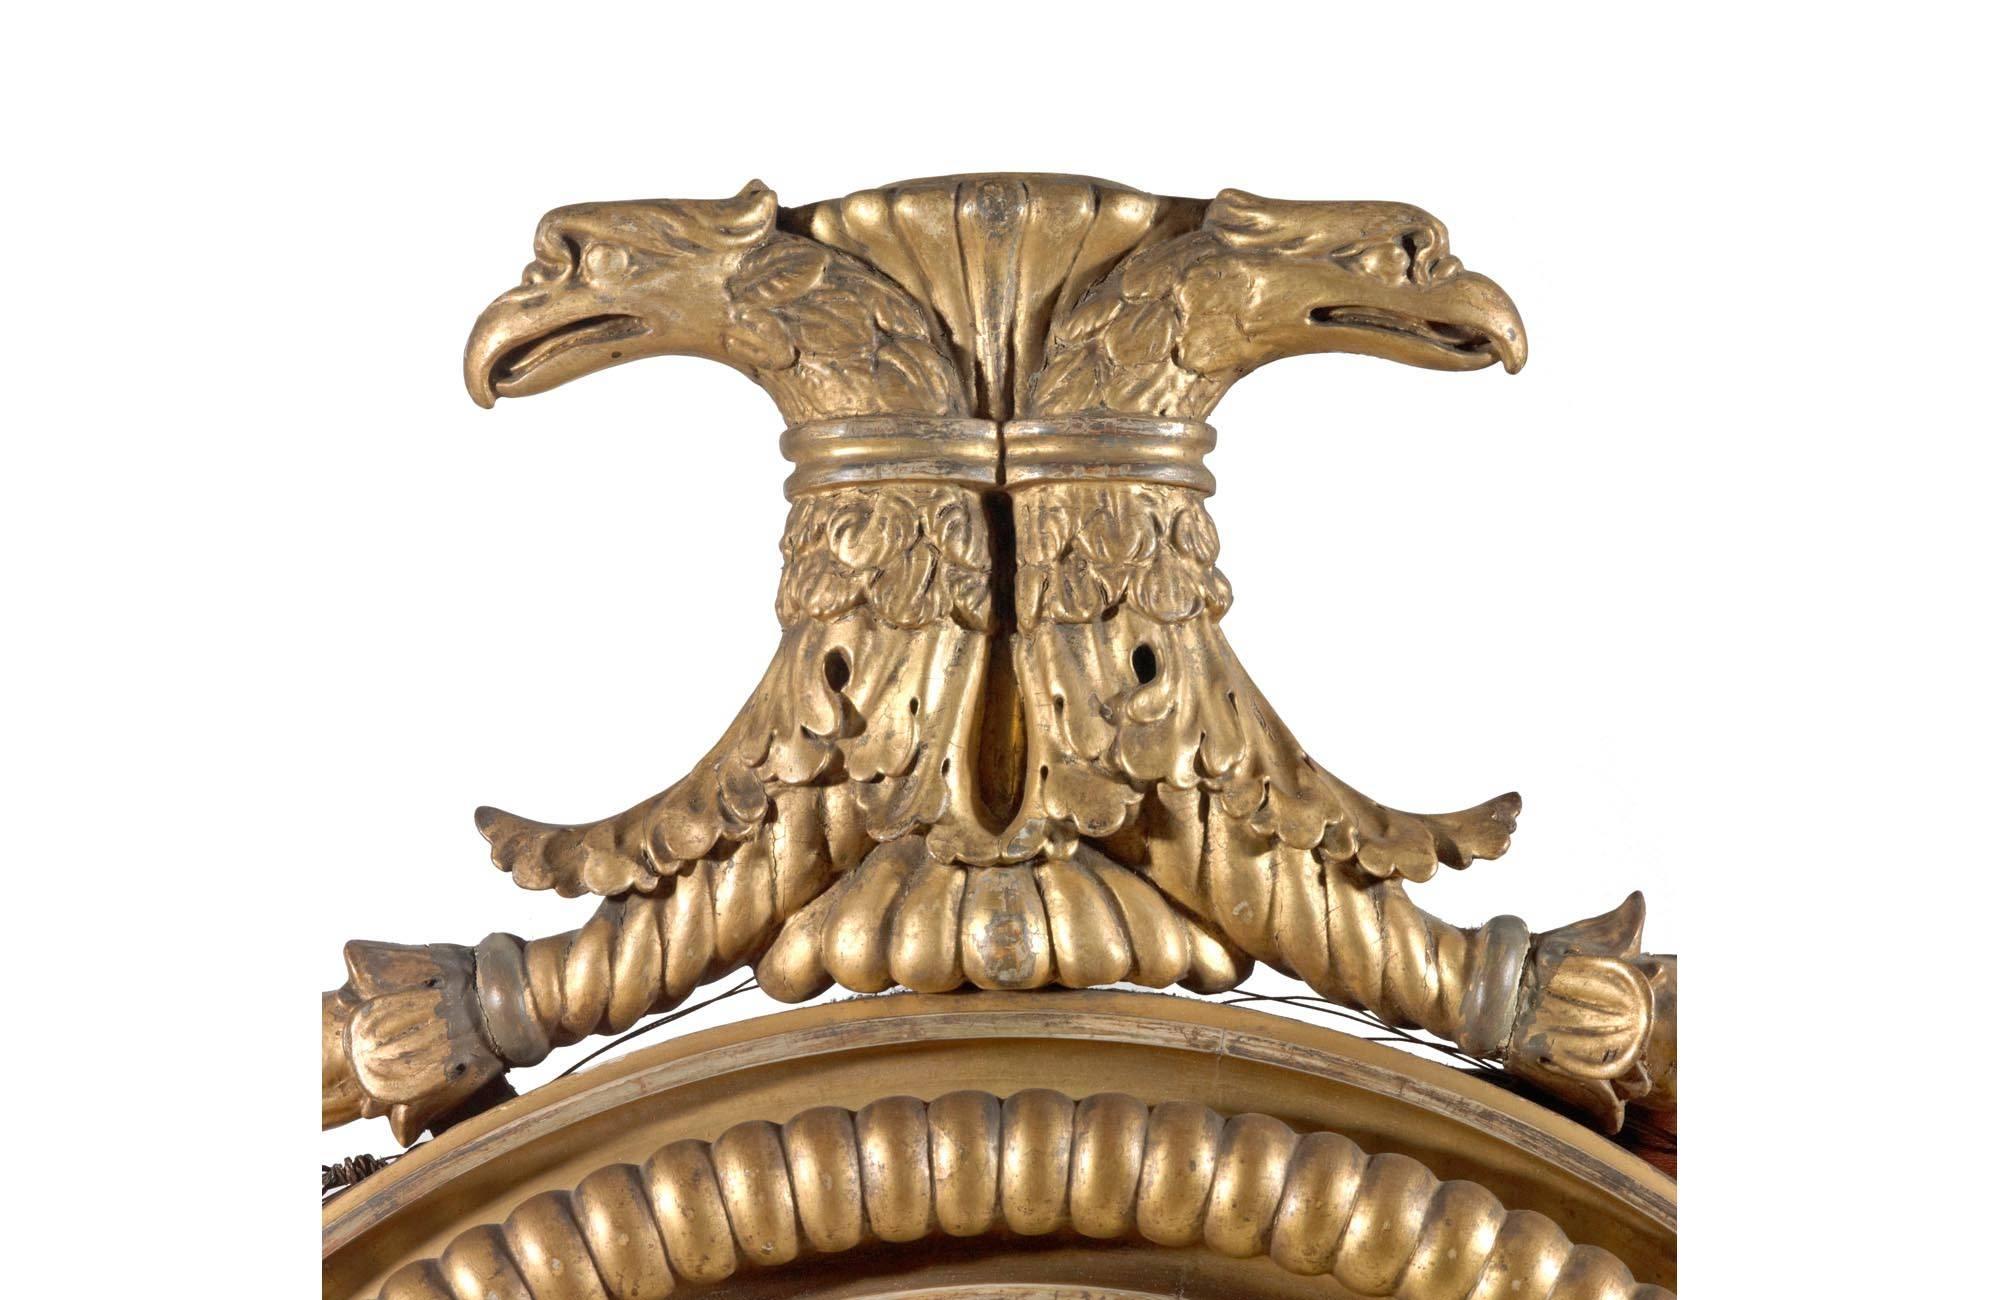 Miroir convexe doré du début du XIXe siècle. Le bord intérieur et extérieur avec des godrons, le tout avec des têtes d'aigle surmontées de sculptures de fruits. Le tablier est centré par une tête de lion à décor floral sculpté, avec deux chandeliers